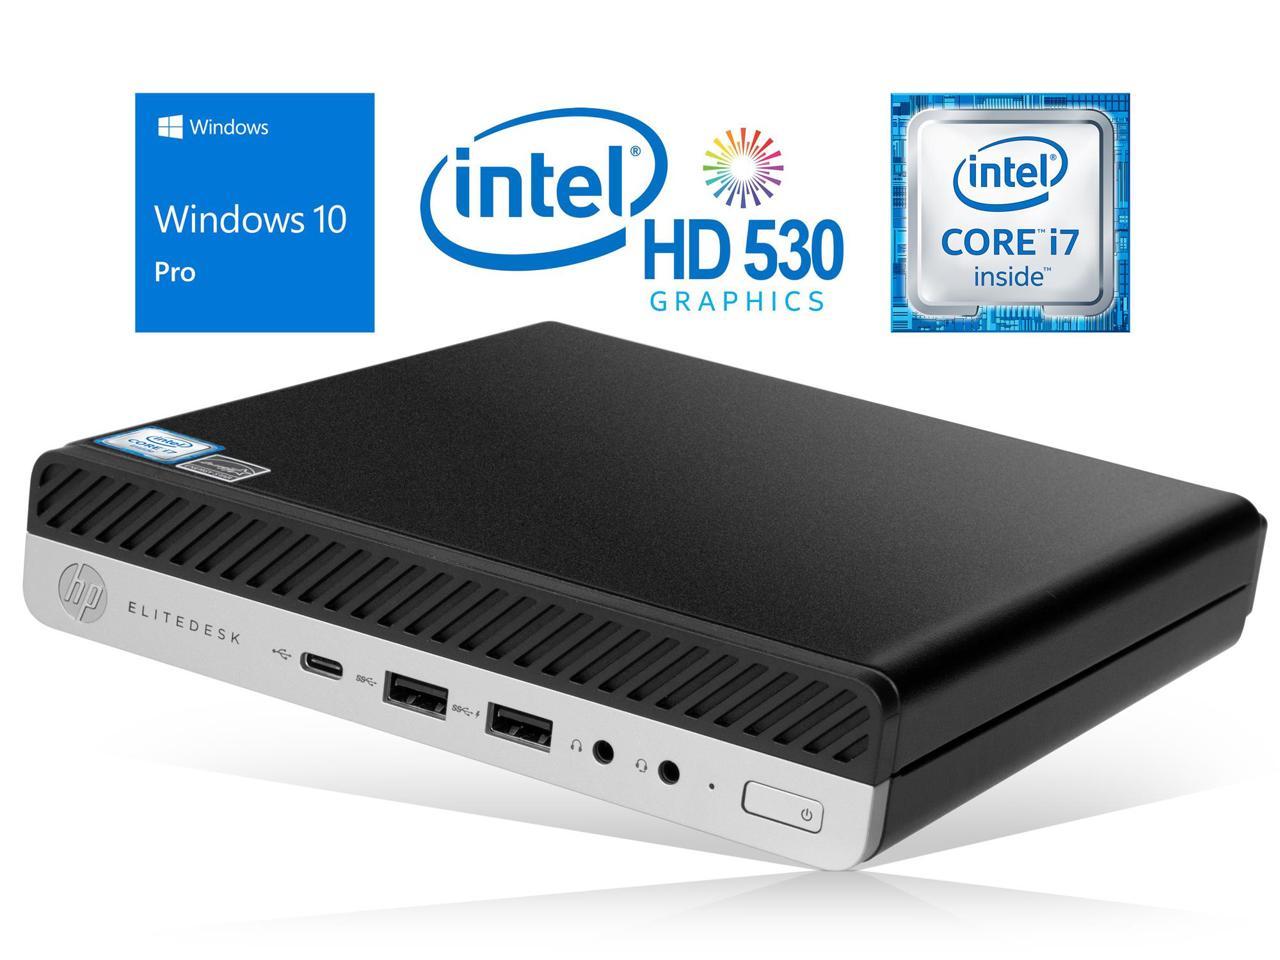 HP EliteDesk 800 G3 Mini PC, Intel Core i7-6700 Upto 4.0GHz, 16GB RAM, 1TB SSD, DisplayPort, Wi-Fi, Bluetooth, Windows 10 Pro